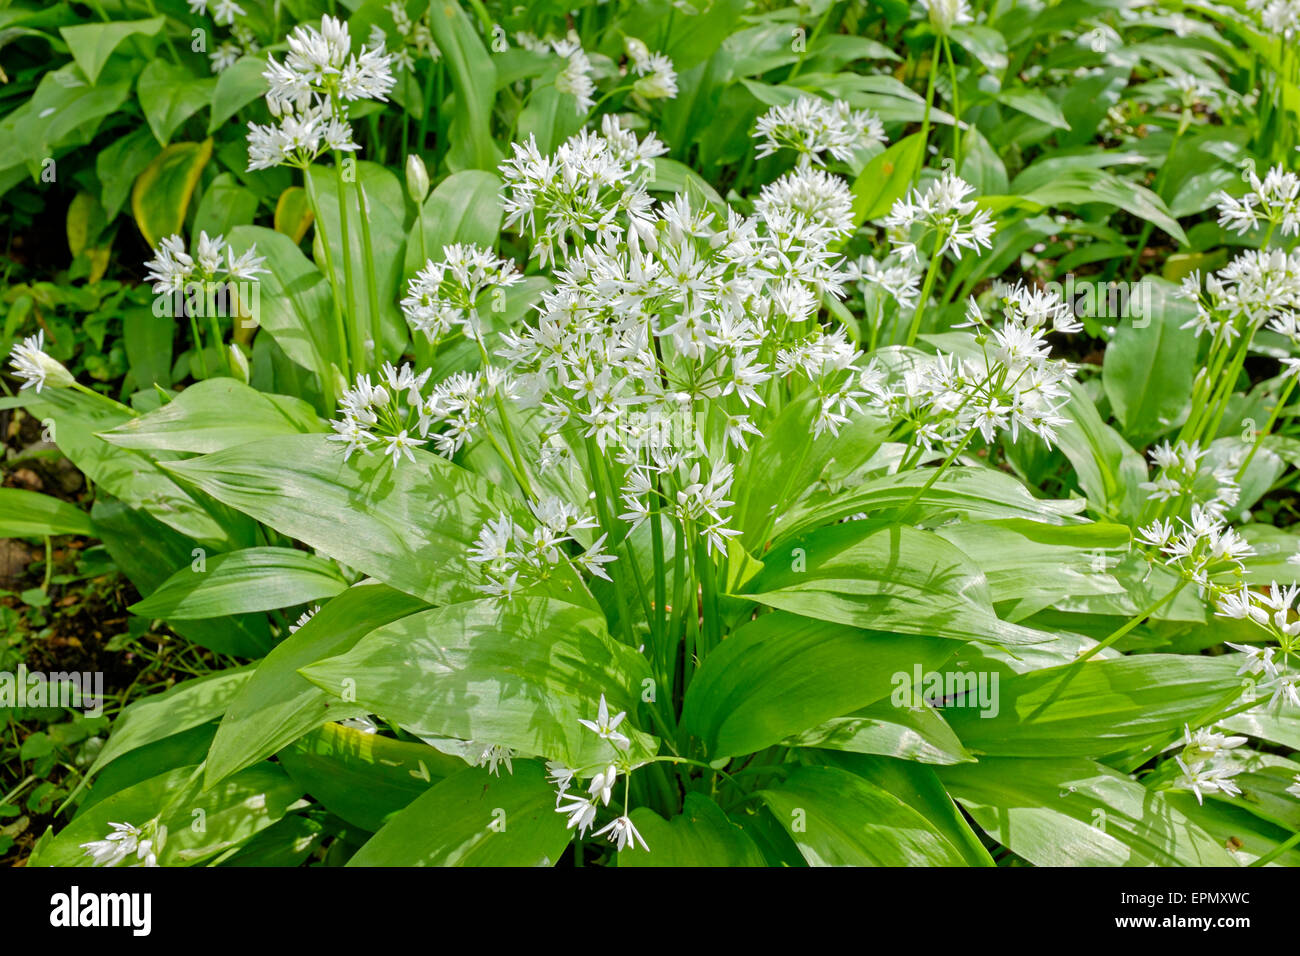 Wilder Knoblauch Pflanzen wachsen in Wäldern, Ayrshire, Schottland,  Großbritannien. Pflanze ist auch bekannt als Lösegeld, Stoffen, Holz  Knoblauch und breit Stockfotografie - Alamy